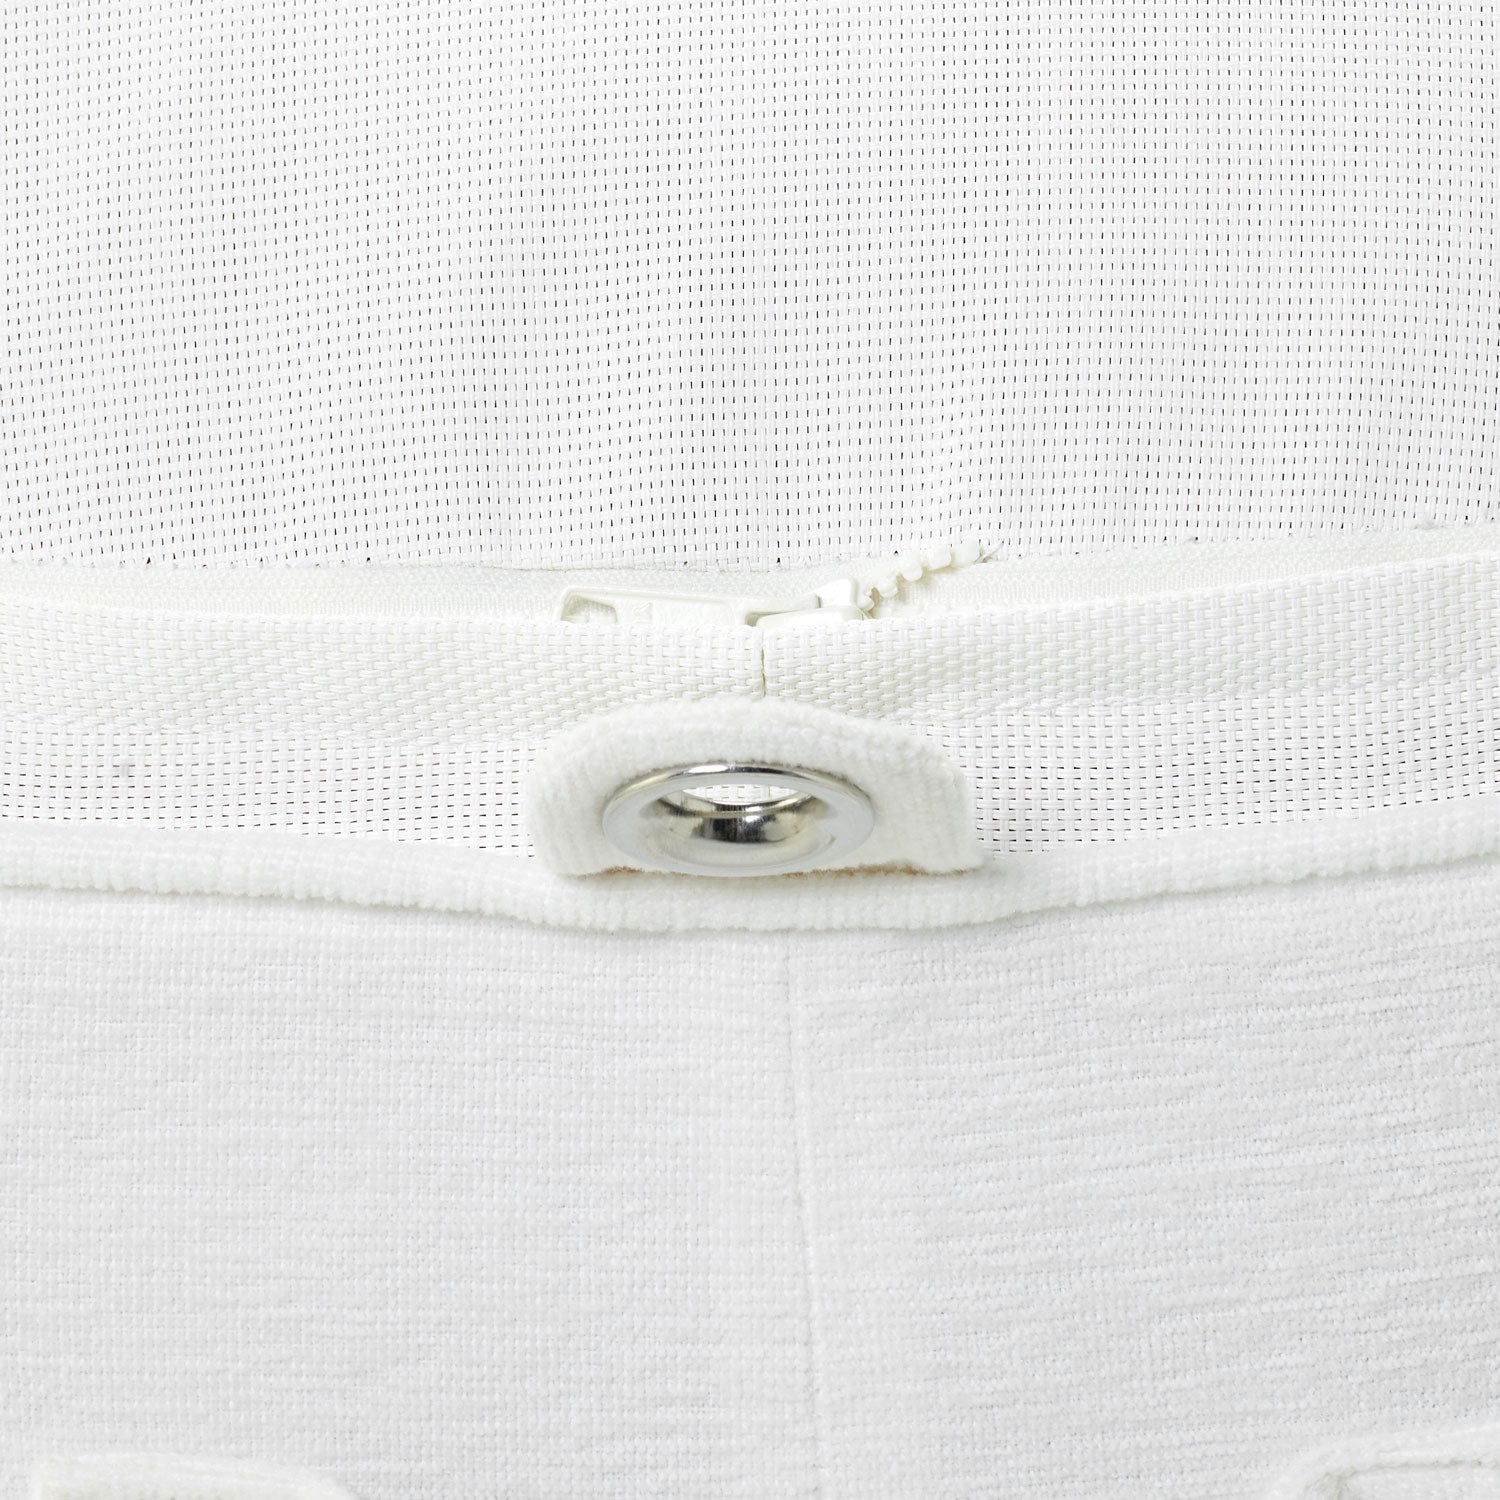 Flotteur de piscine pour adultes en tissu éponge blanc, à l'envers, montrant les œillets et la base.